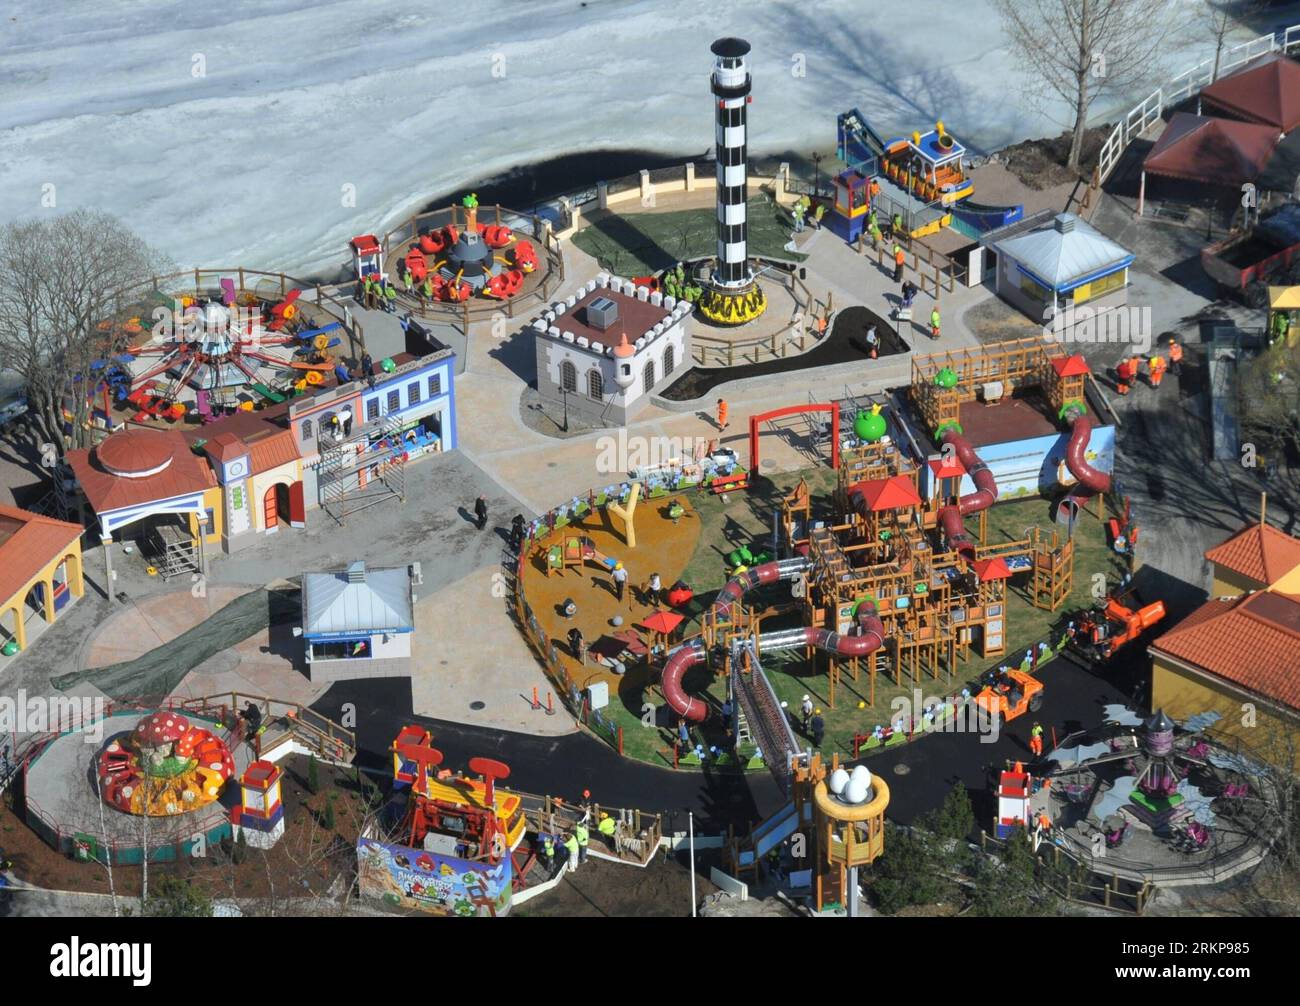 Bildnummer : 57933459 Datum : 25.04.2012 Copyright : imago/Xinhua (120426) -- TAMPERE, 26 avril 2012 (Xinhua) -- photo prise le 25 avril 2012 montre la vue générale de la Terre des oiseaux en colère construite dans Sarkanniemi Adventure Park, Tampere, Finlande. Le terrain Angry Birds dans le parc d'aventure Sarkanniemi a commencé à être construit à l'hiver 2011 et sera ouvert au public le 28 avril 2012. Le jeu Angry Birds développé par la société de jeux finlandaise Rovio pour les smartphones à écran tactile est rapidement devenu populaire dans le monde entier avec un grand succès depuis son lancement fin 2009. (Xinhua/Zhao Banque D'Images